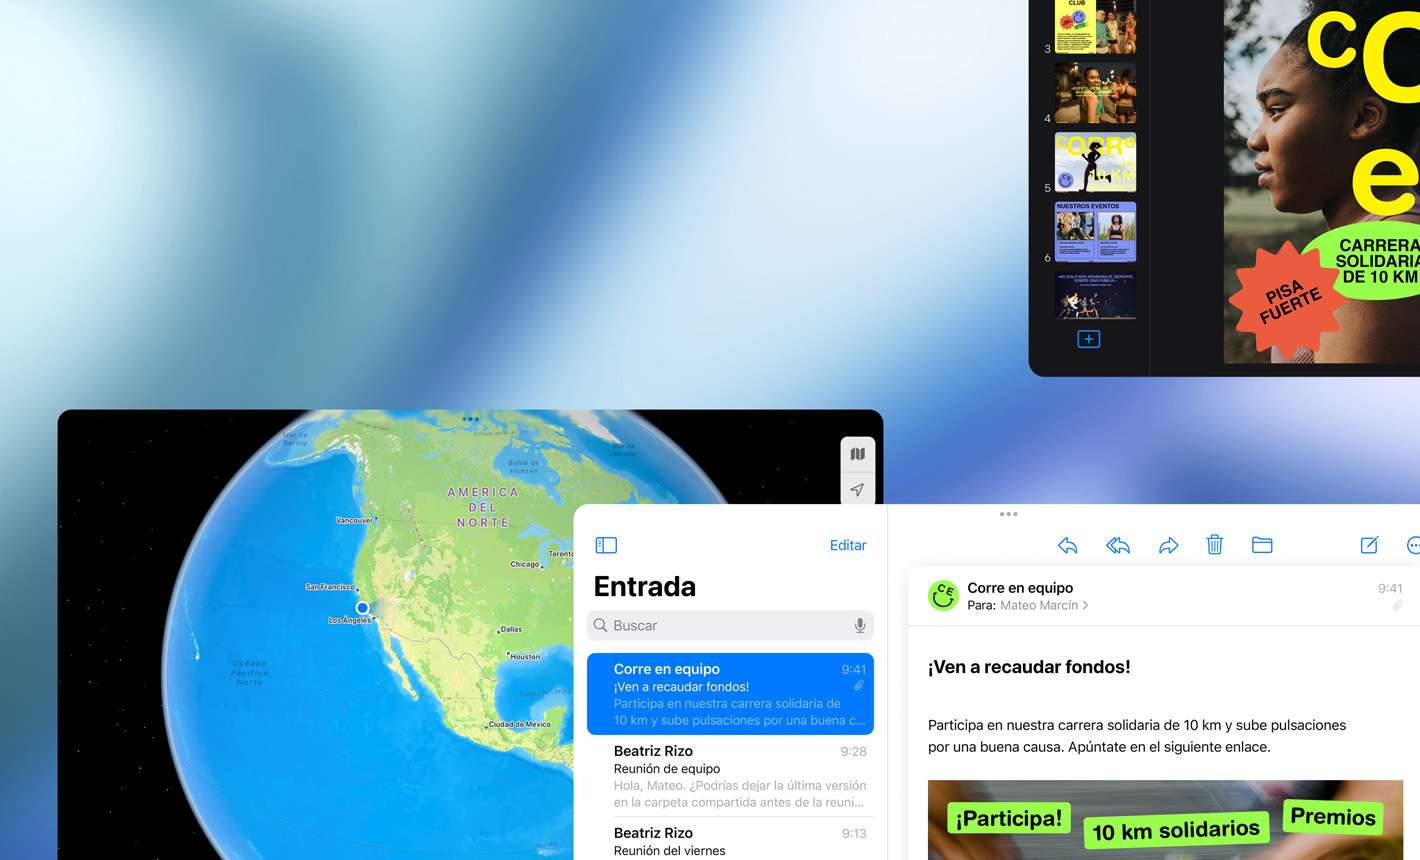 Vista horizontal de varias pantallas que muestran distintas apps en uso